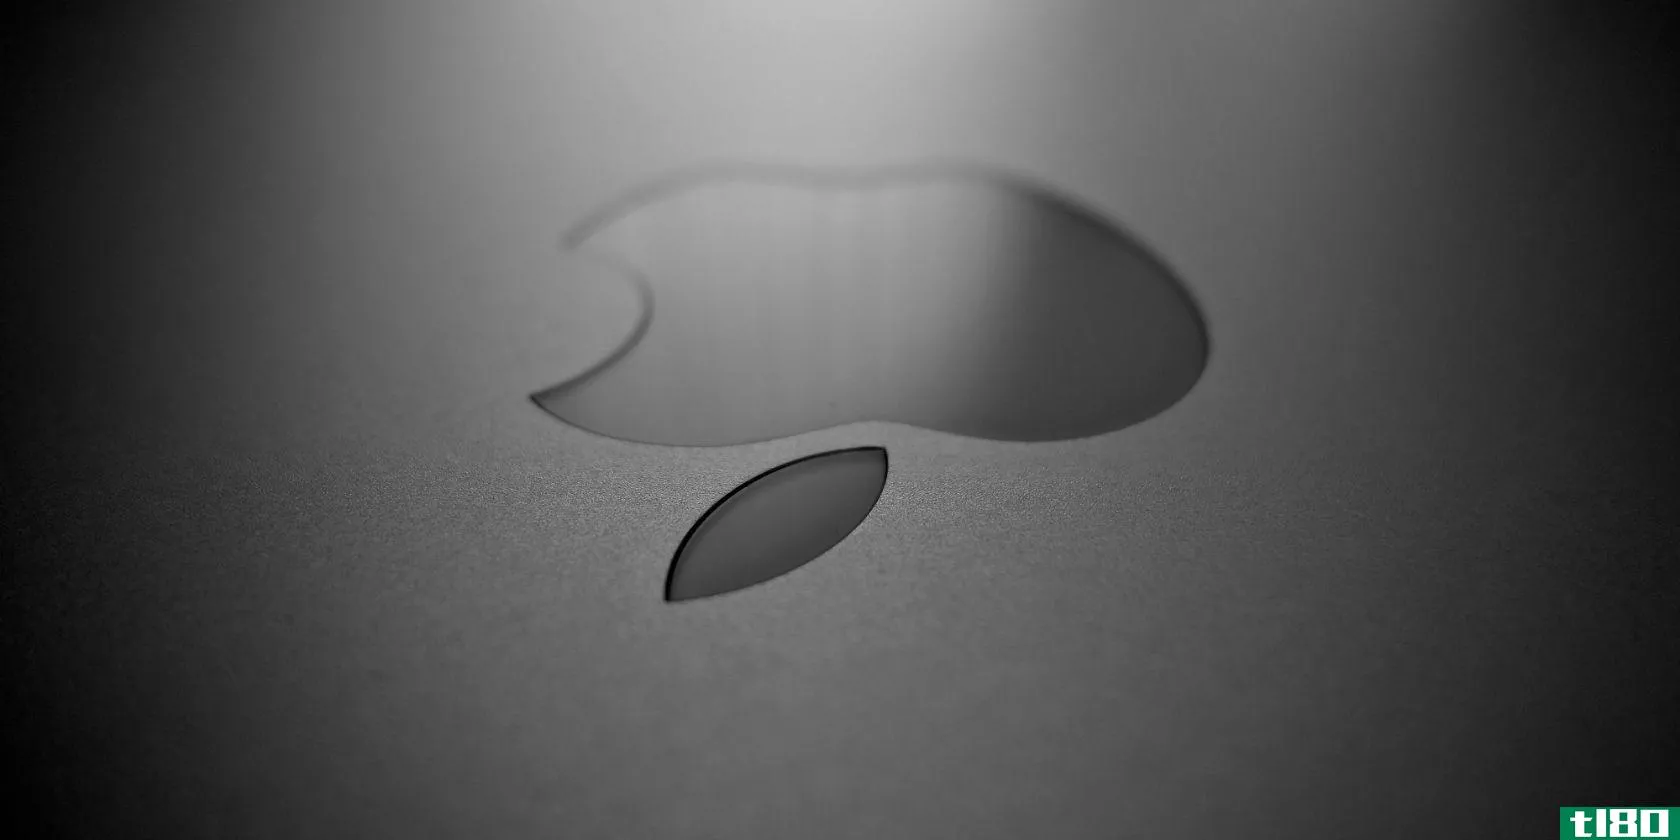 upside-down-apple-logo